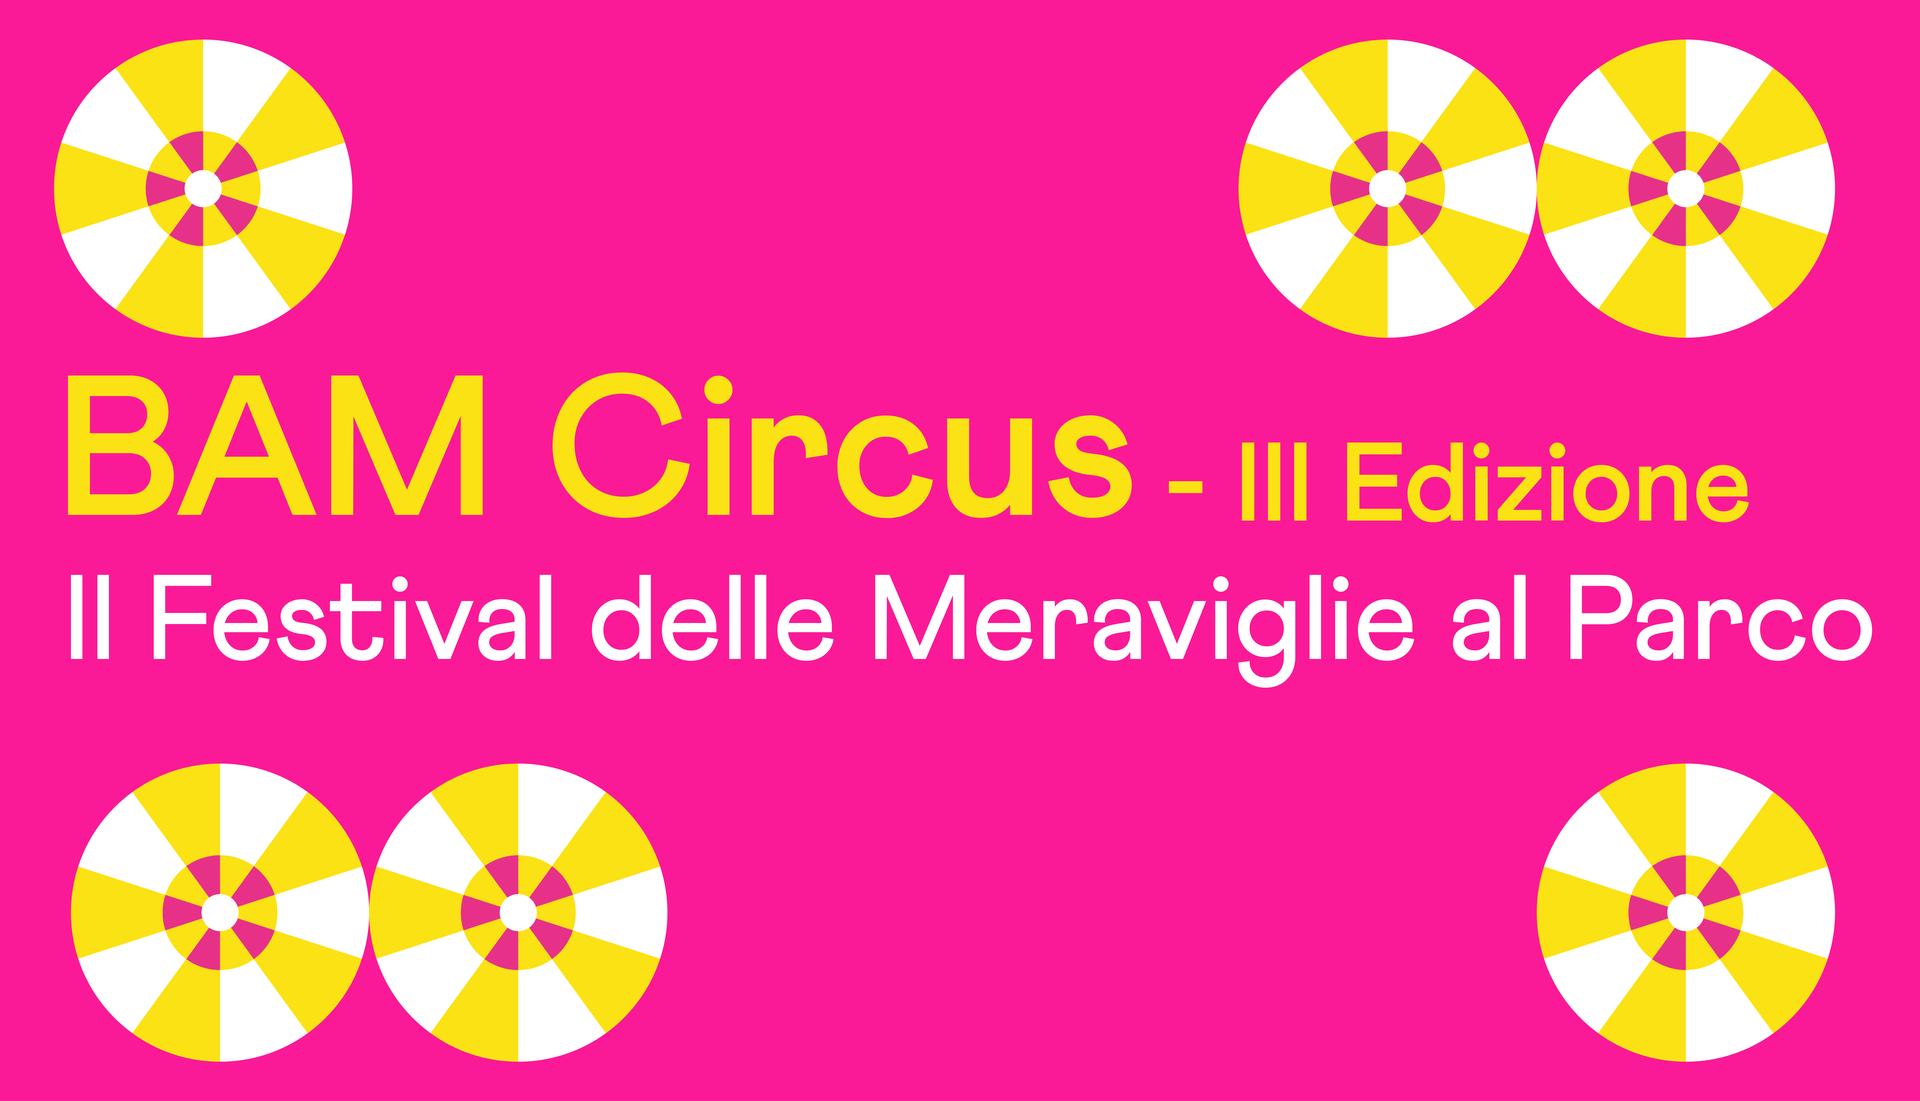 BAM Circus - III Edizione, Il Festival delle Meraviglia al Parco